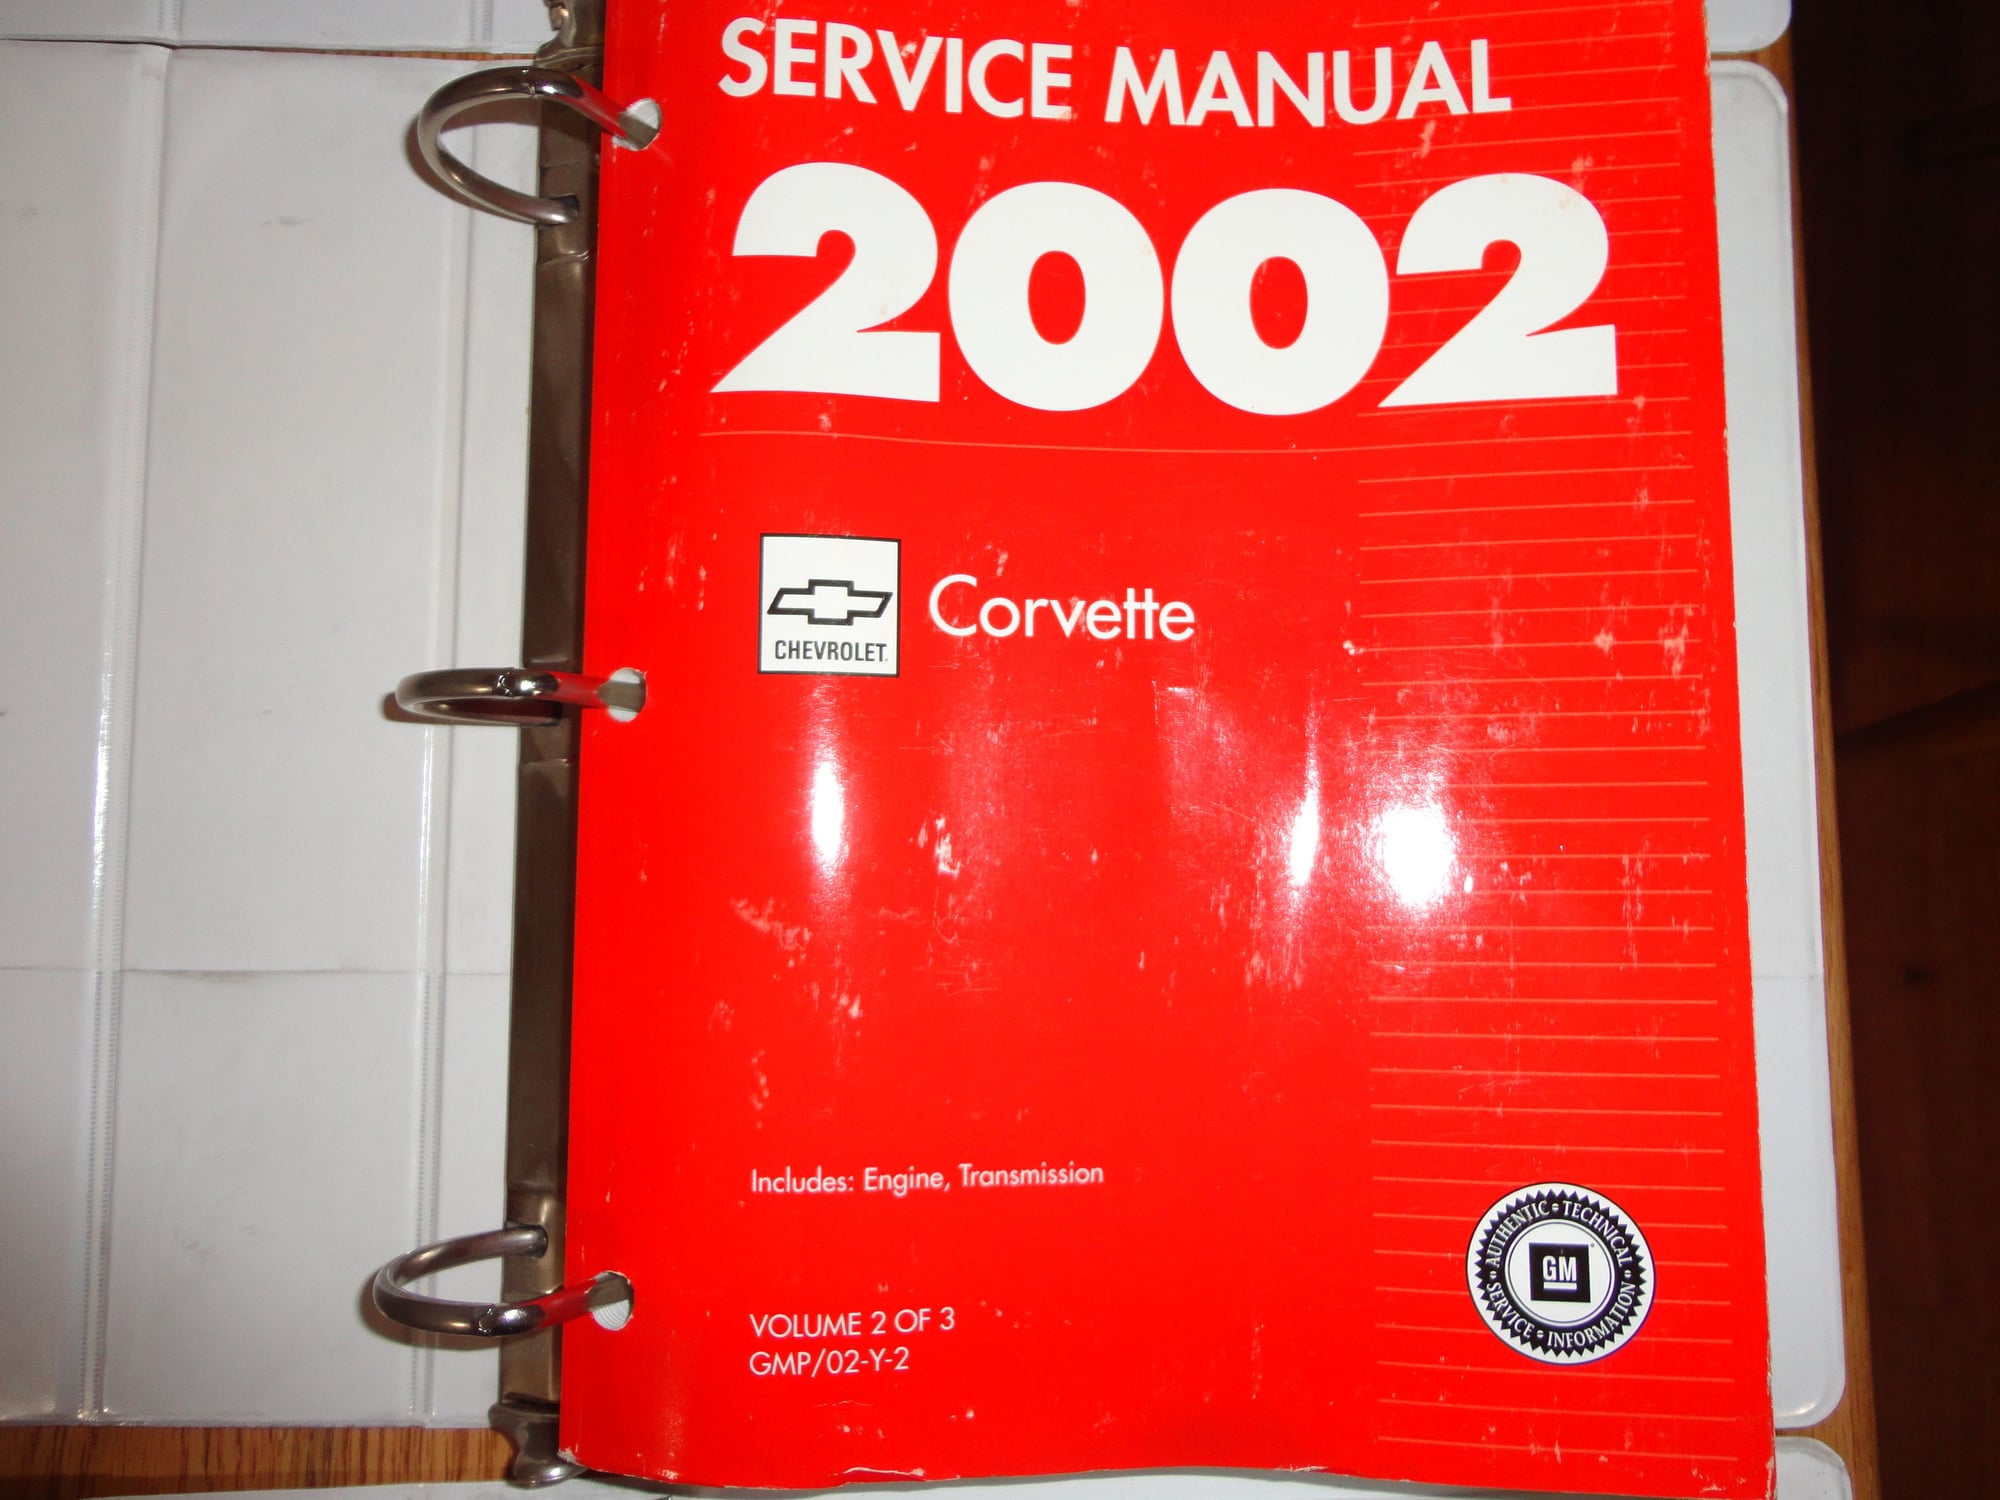 FS (For Sale) 2002 Corvette C5 Factory Service Manuals - CorvetteForum